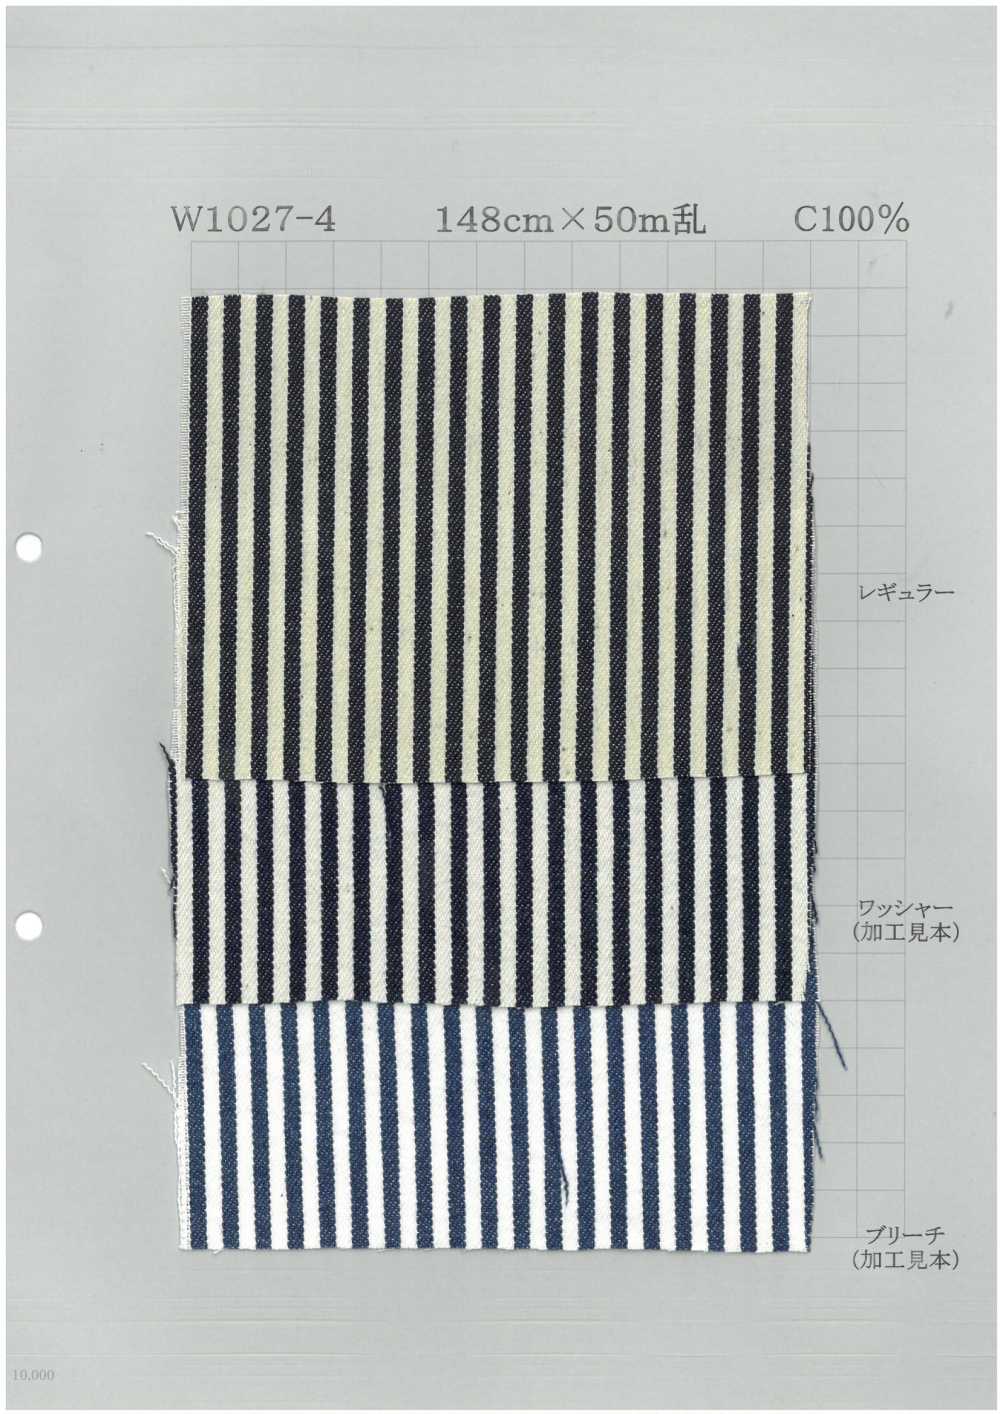 W1027-4 Vải Bò Kẻ Sọc đậm Chất Cotton Dệt May Yoshiwa